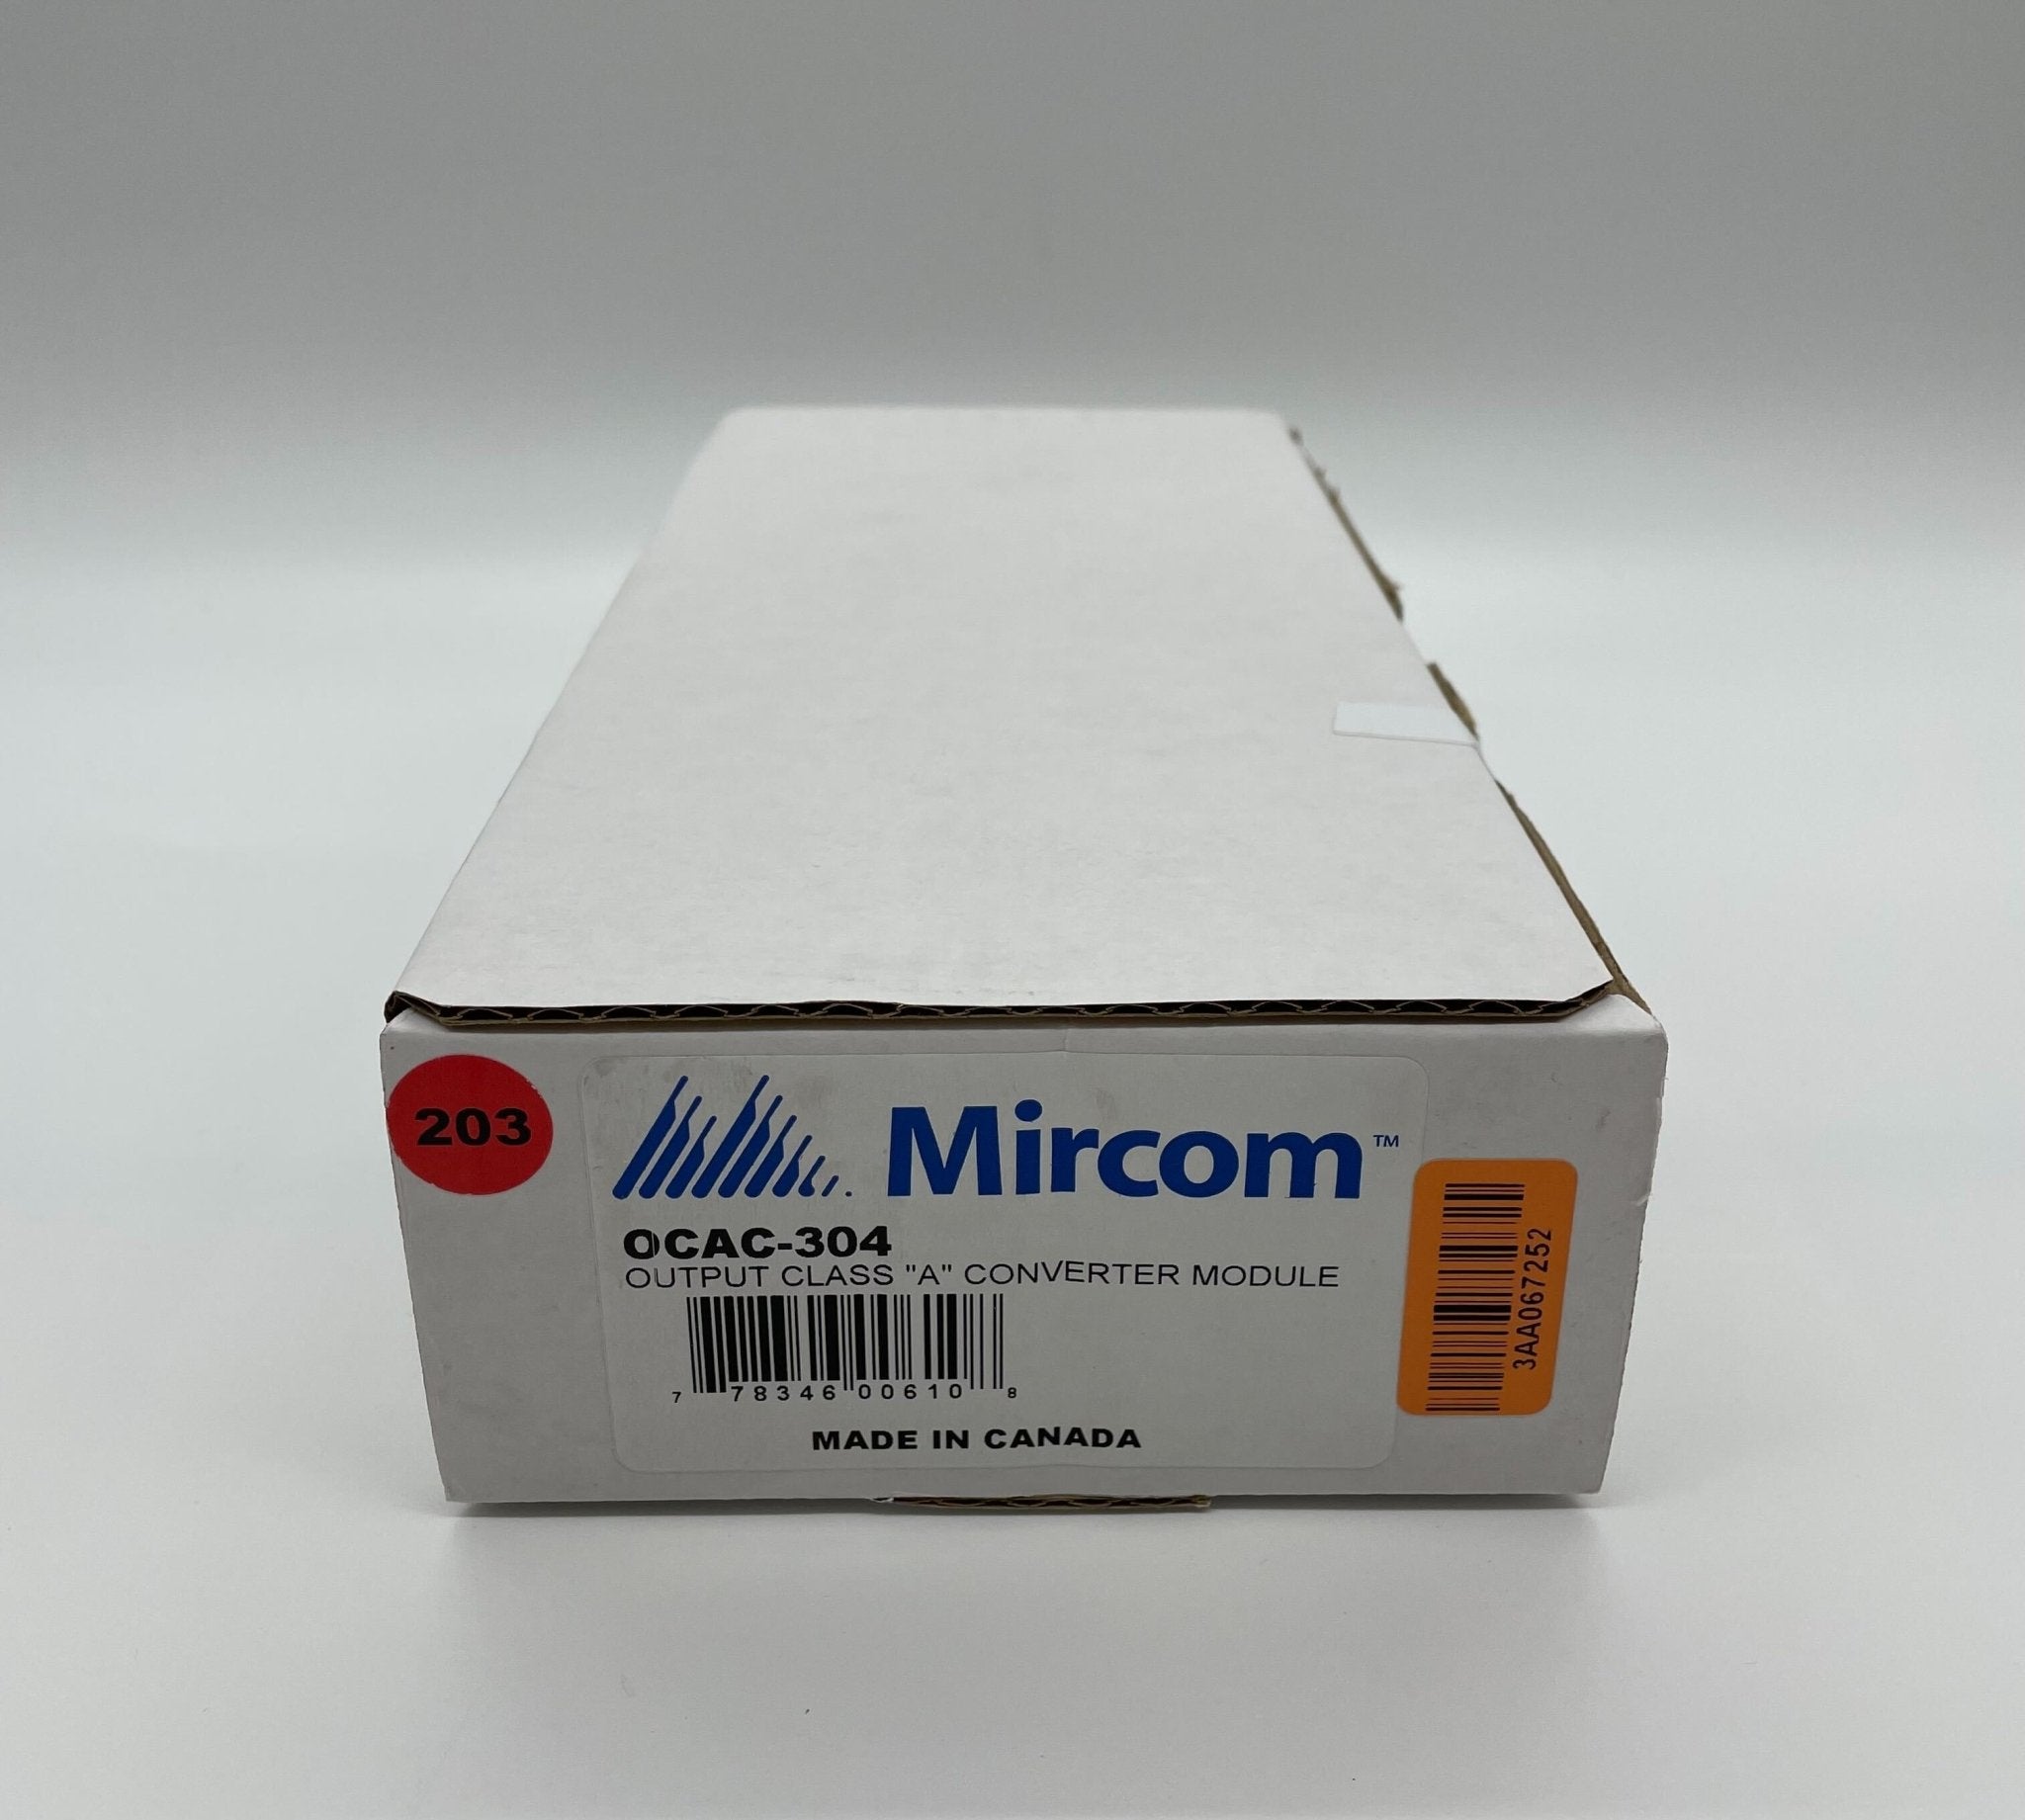 Mircom OCAC-304 - The Fire Alarm Supplier